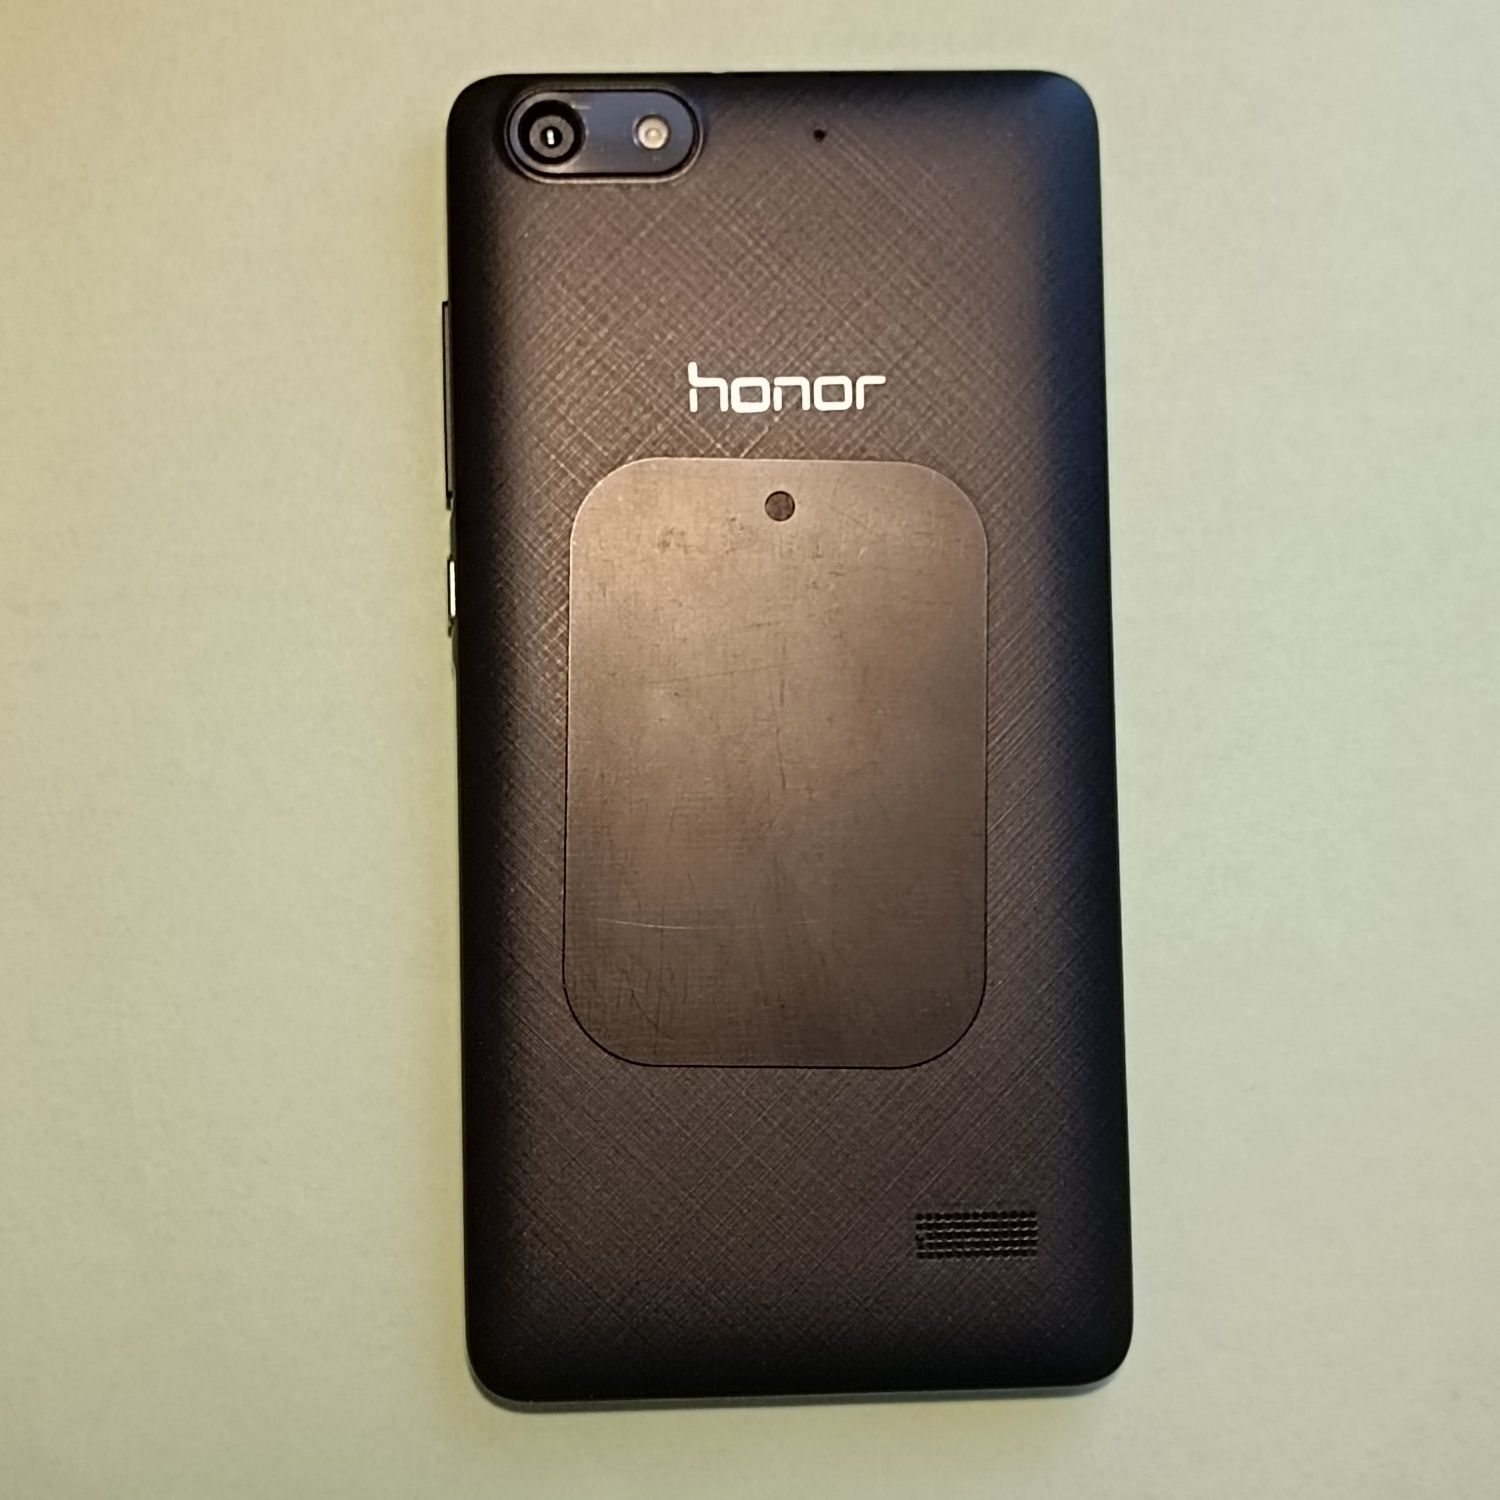 Мобільний телефон Honor 4c black